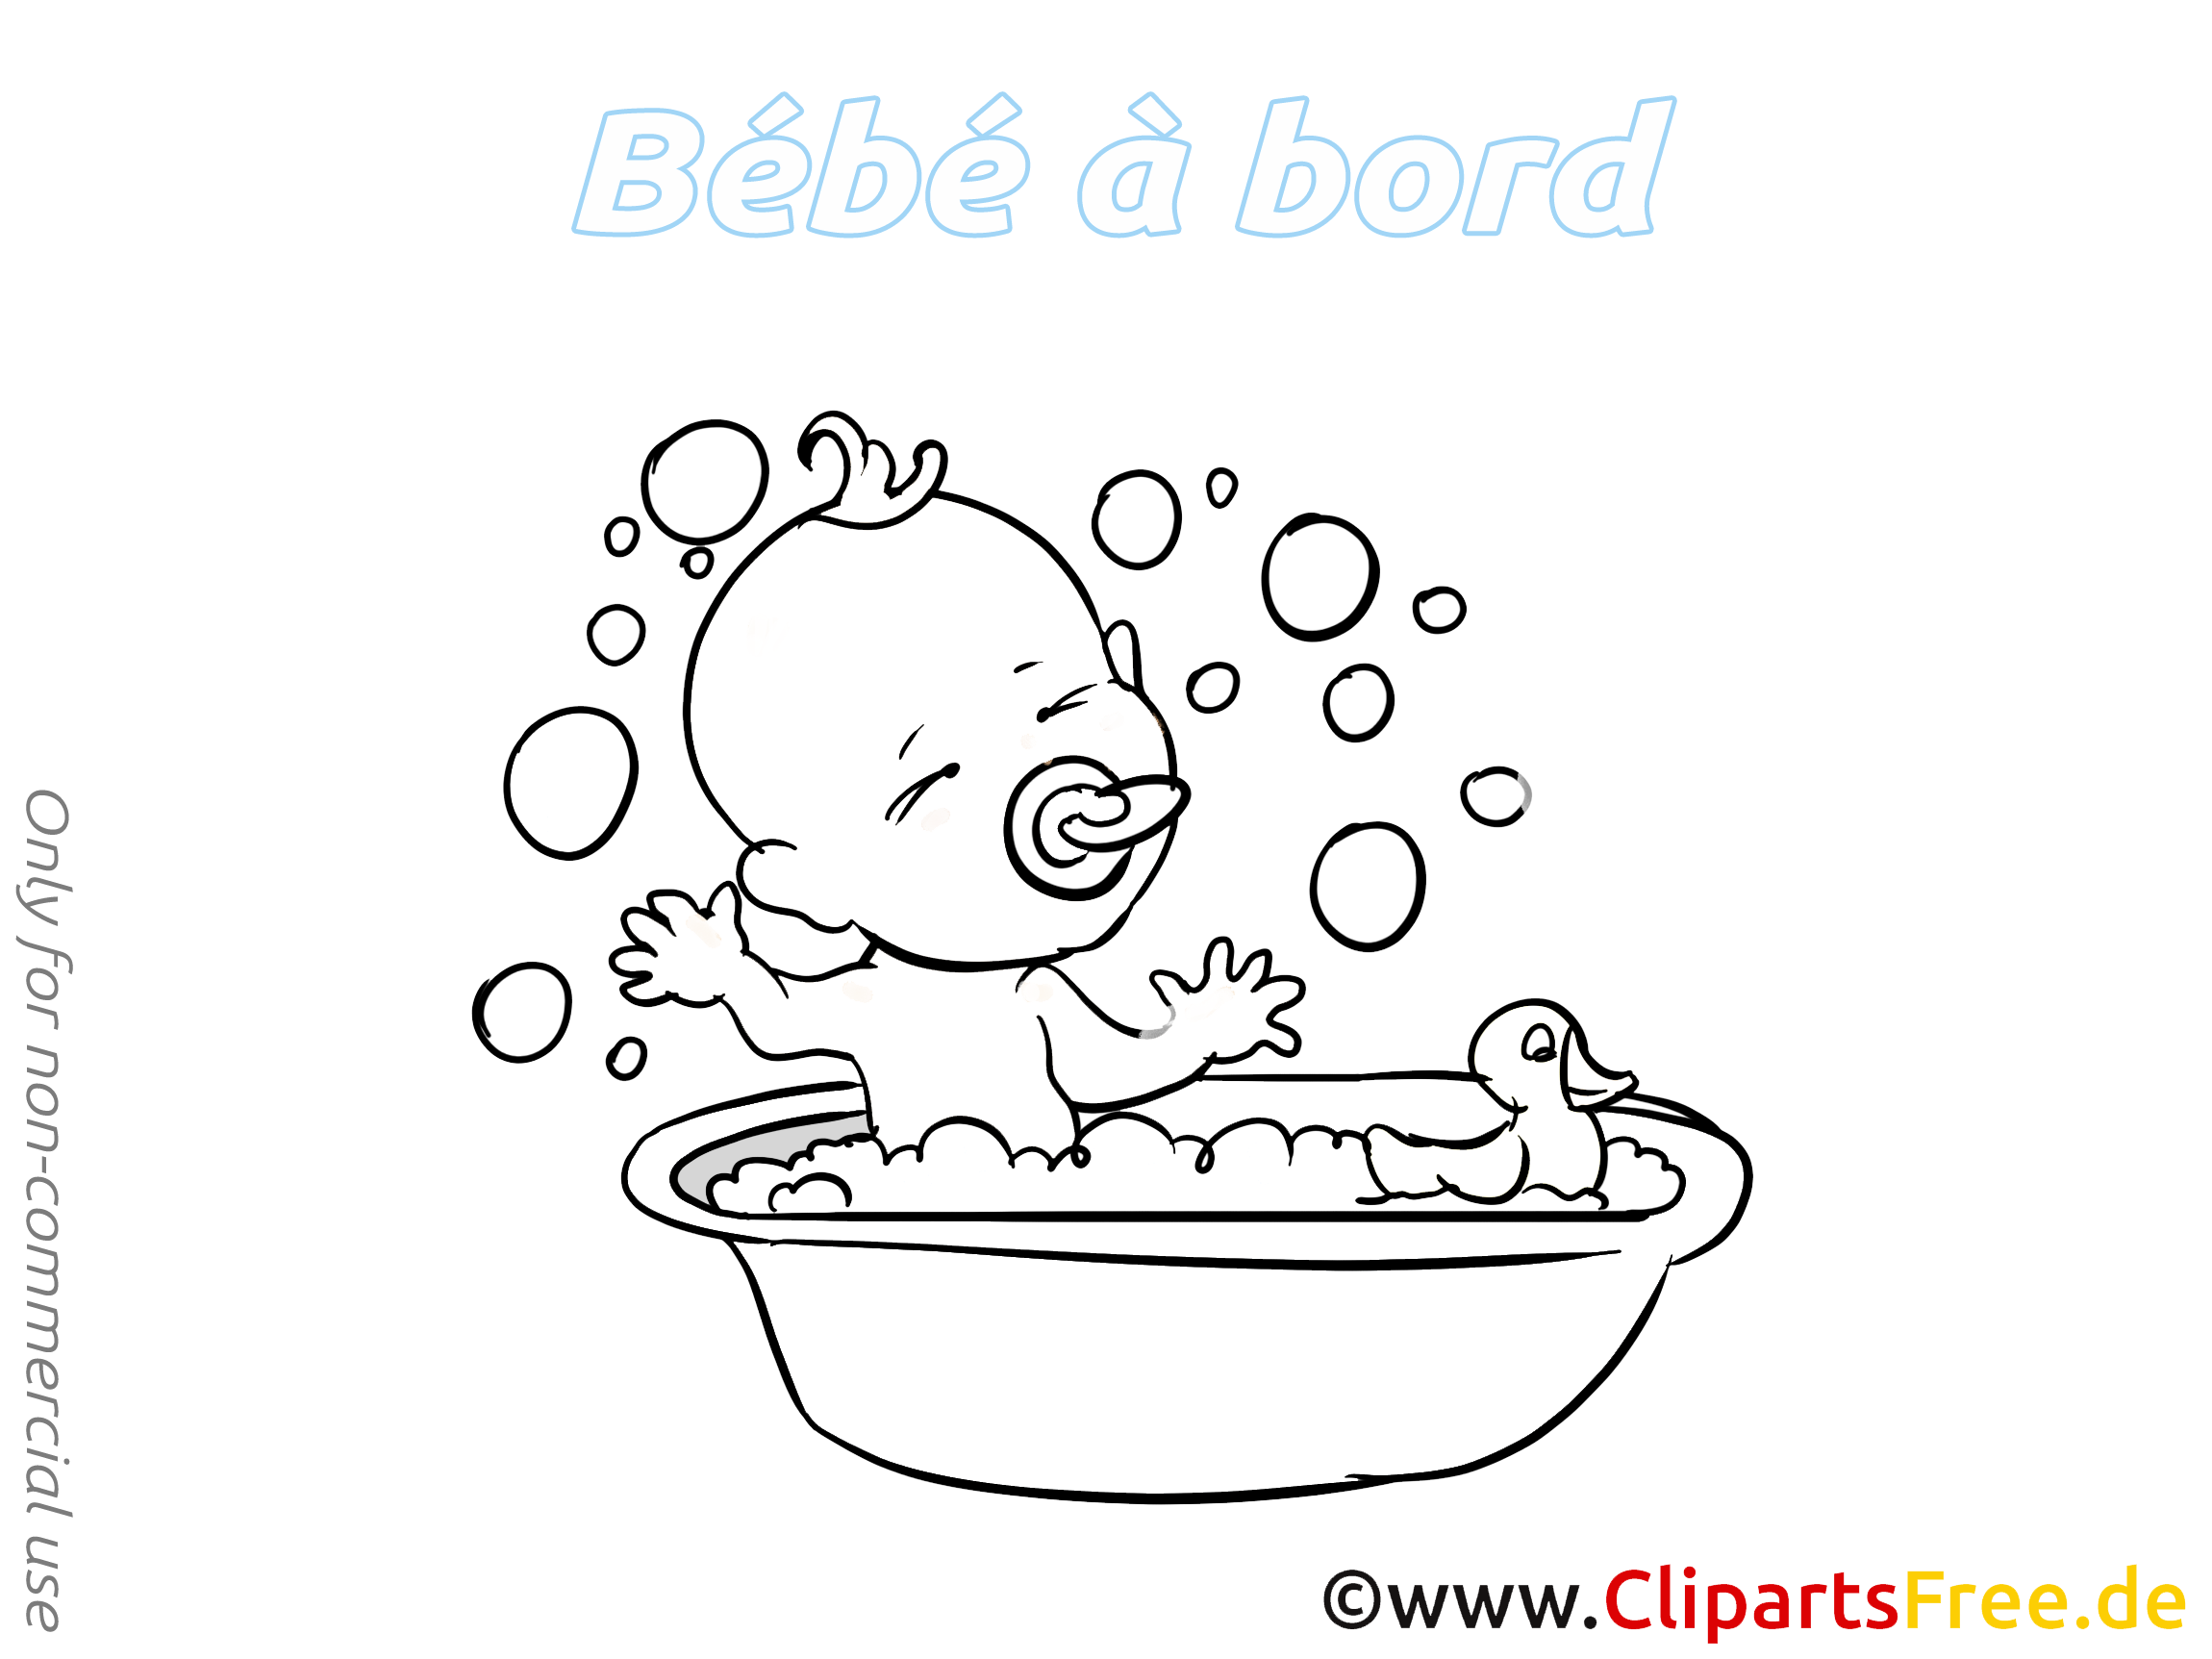 Bain clipart à colorier – Bébé à bord images